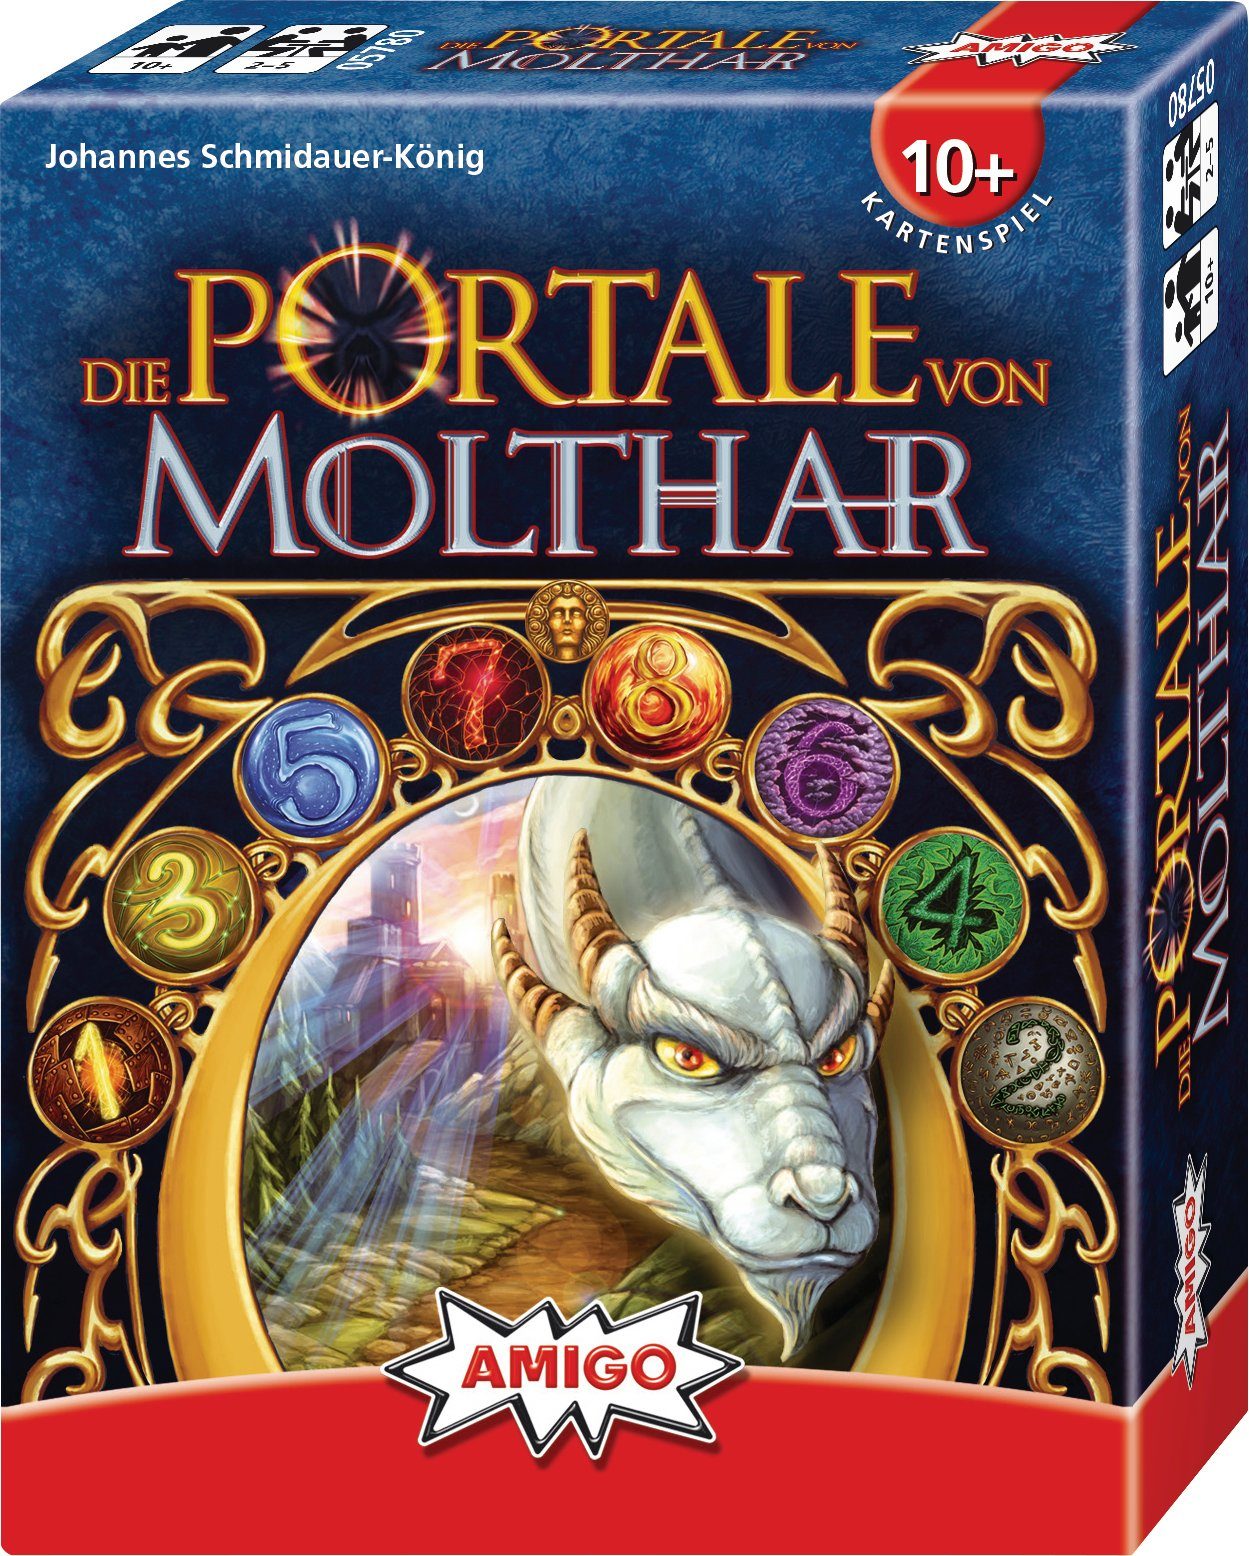 Molthar 2-5 AMIGO Spie für Spiel, Portale von Kartenspiel Die -